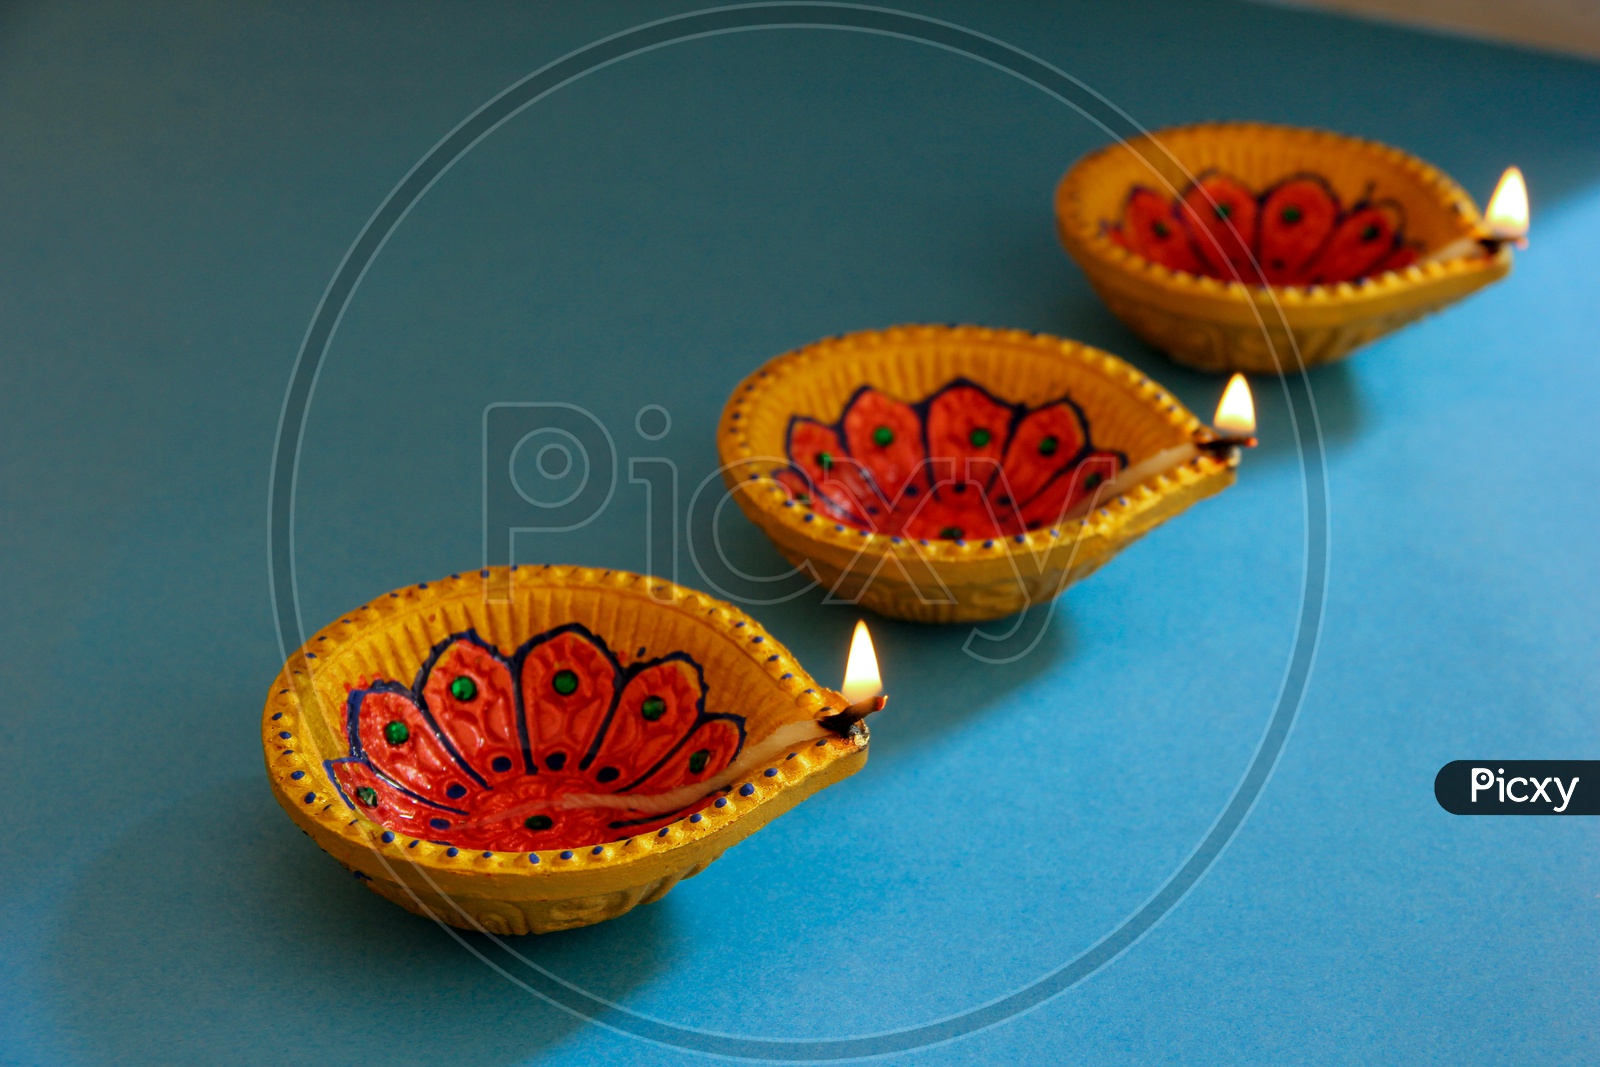 Indian Festival Diwali, Diwali Lamps